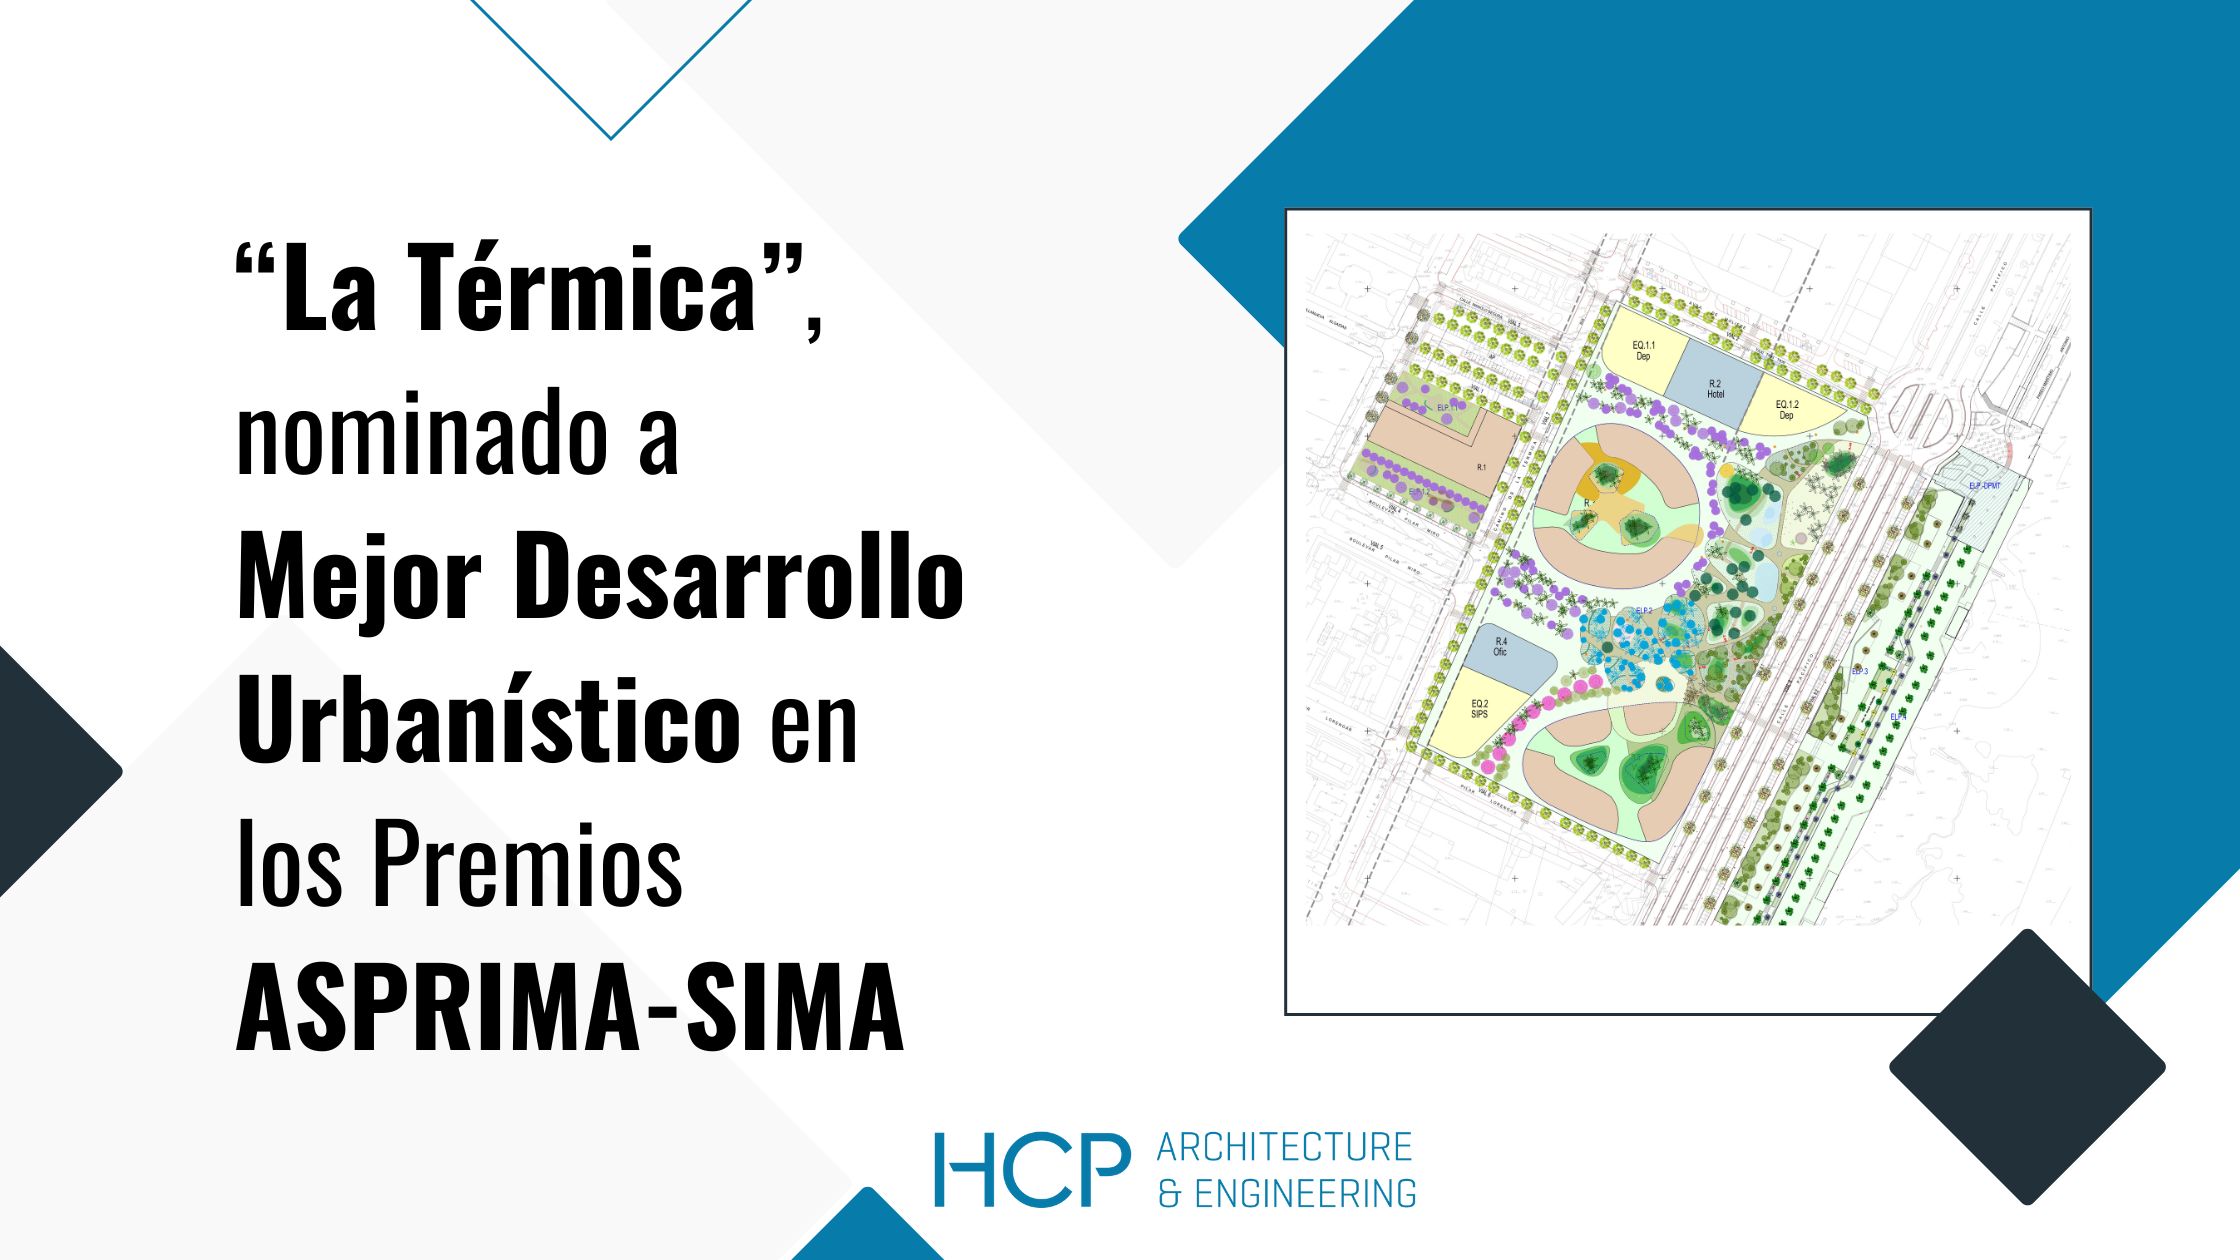 "La Térmica" de HCP nominada a Mejor Desarrollo Urbanístico en los Premios ASPRIMA-SIMA